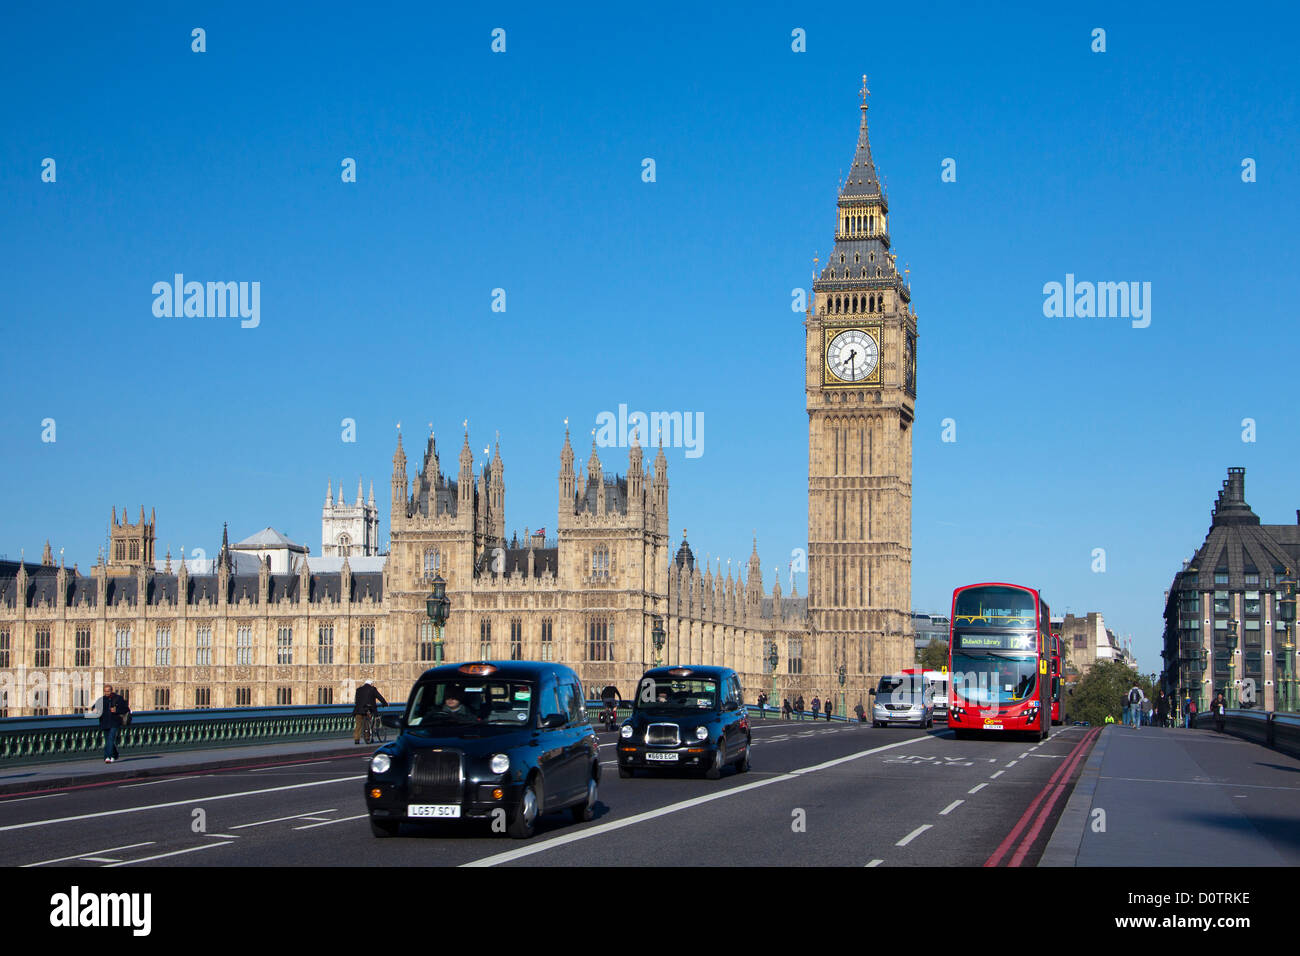 Regno Unito, Gran Bretagna, Europa, viaggi, vacanze, Inghilterra, Londra, Città, Palazzo di Westminster, Big Ben, orologio, landmark, bus rosso, ta Foto Stock